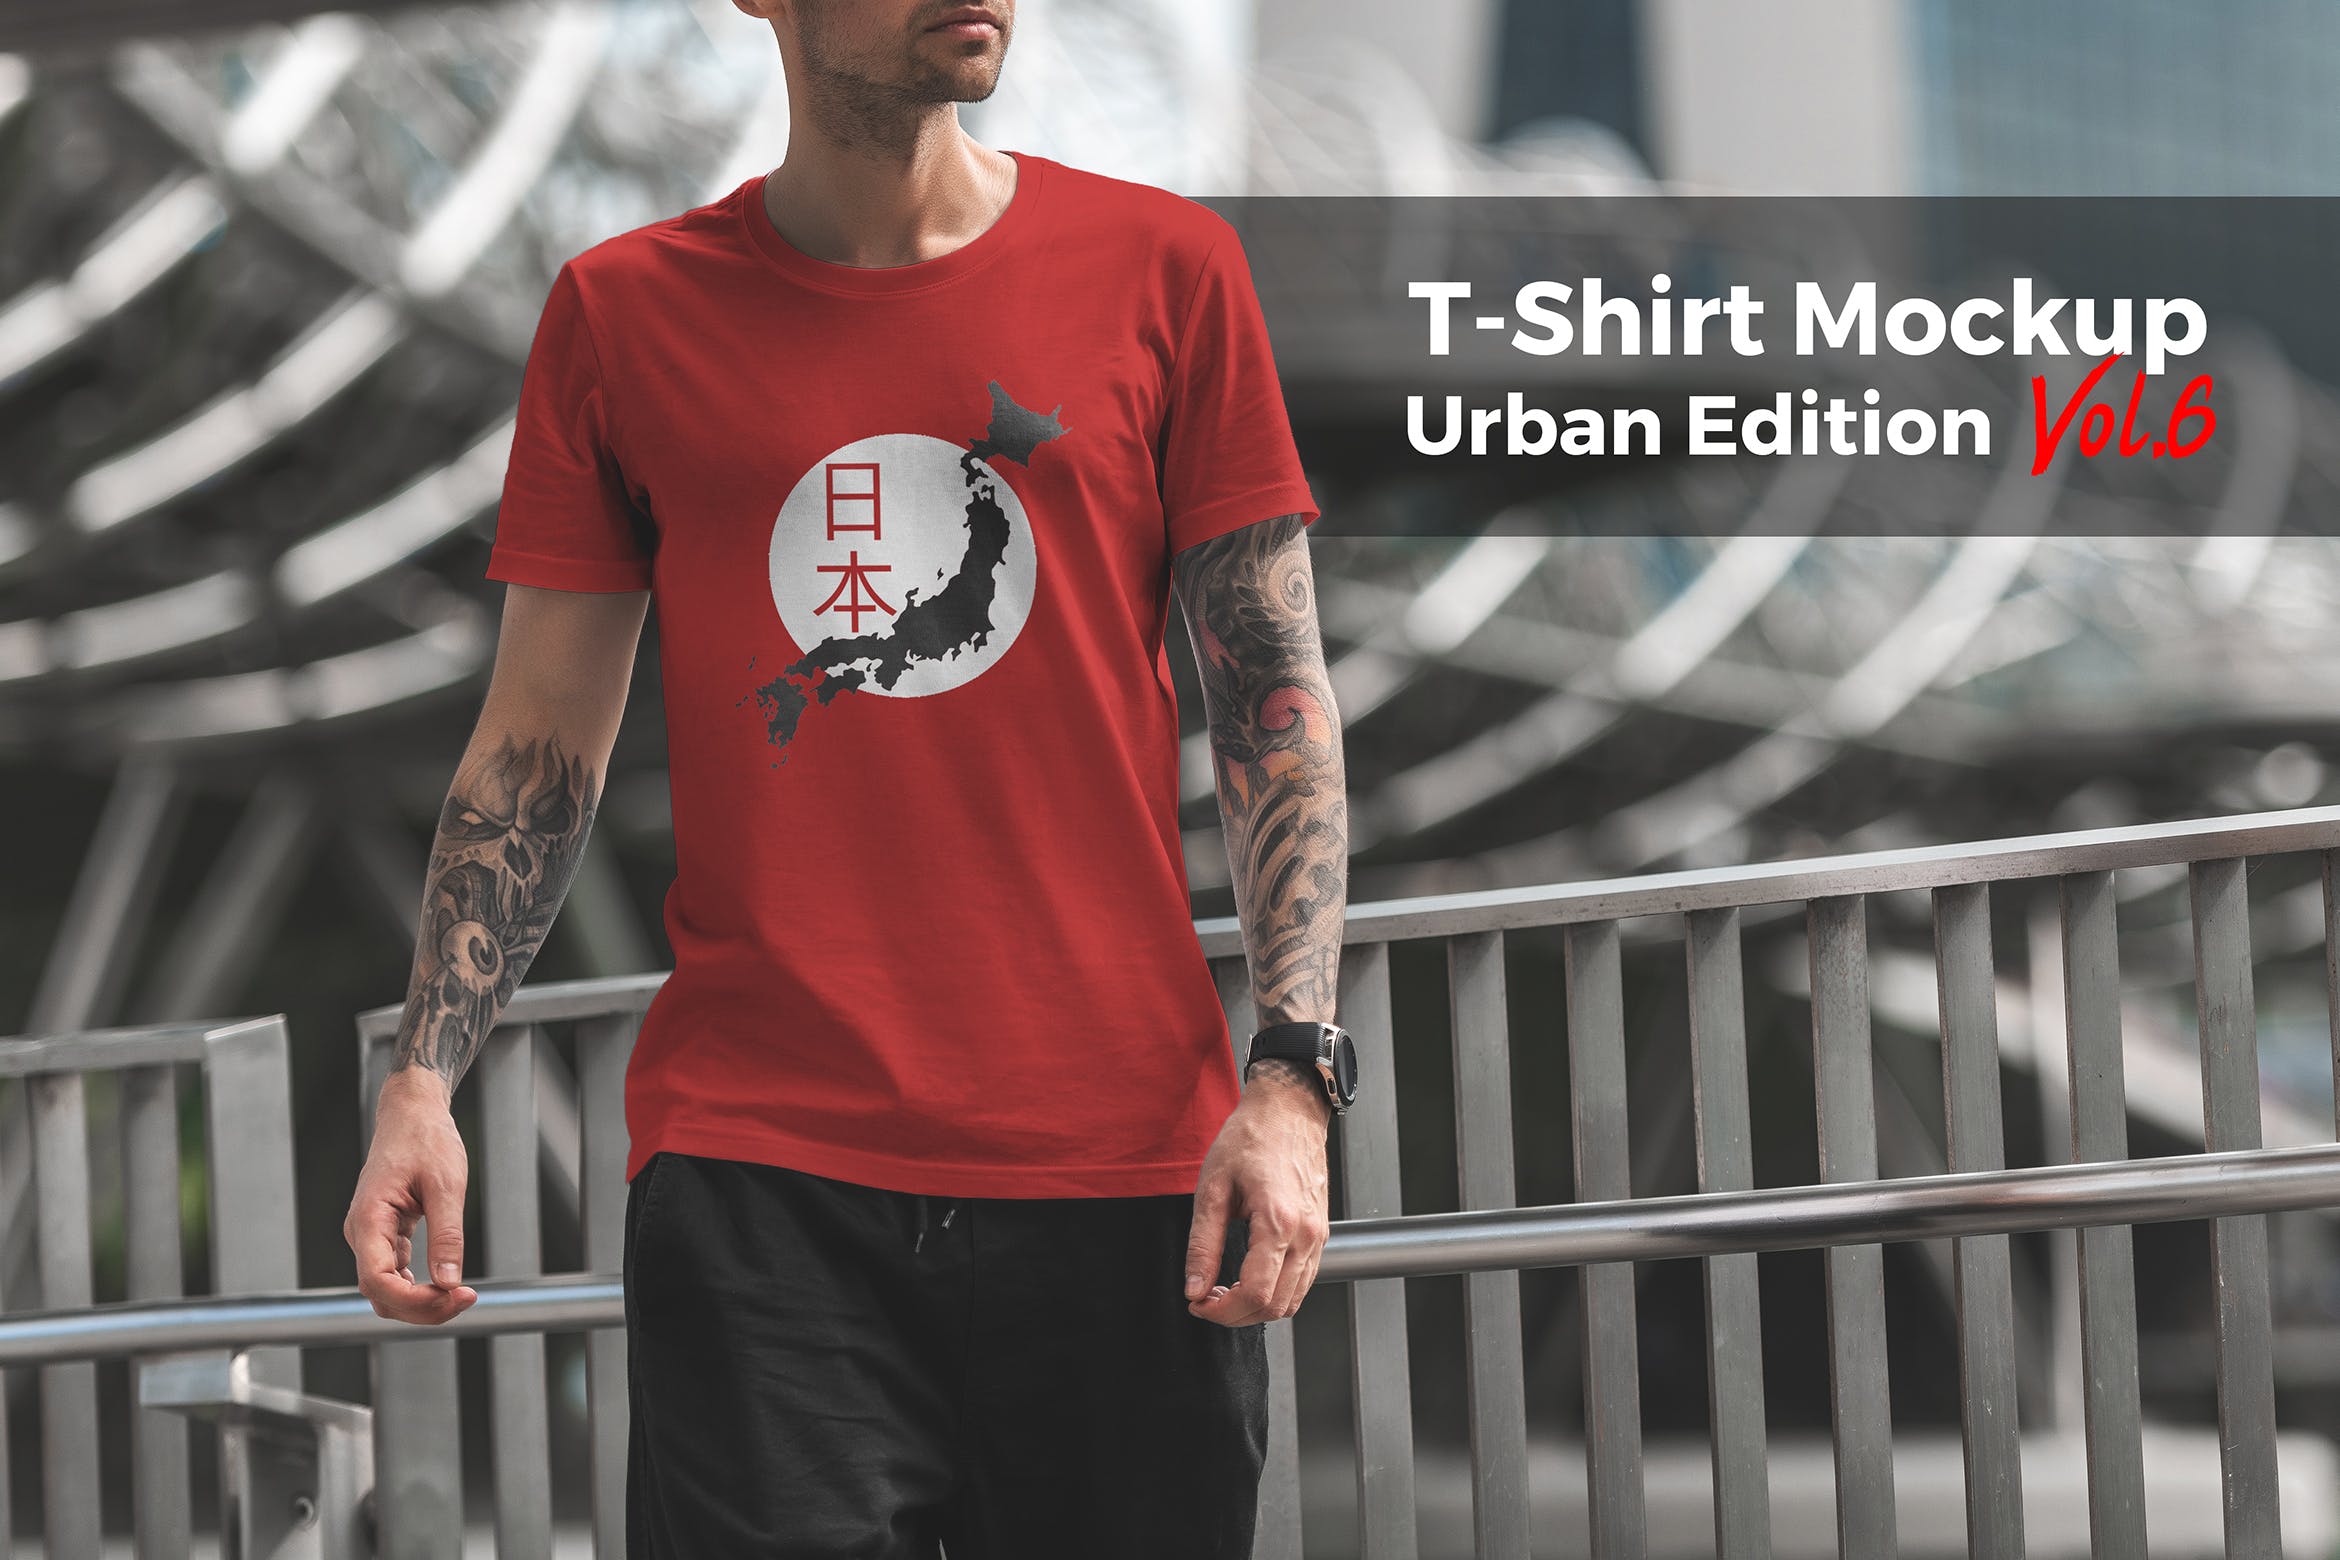 城市系列-印花T恤产品展示样机蚂蚁素材精选模板v6 T-Shirt Mockup Urban Edition Vol. 6插图